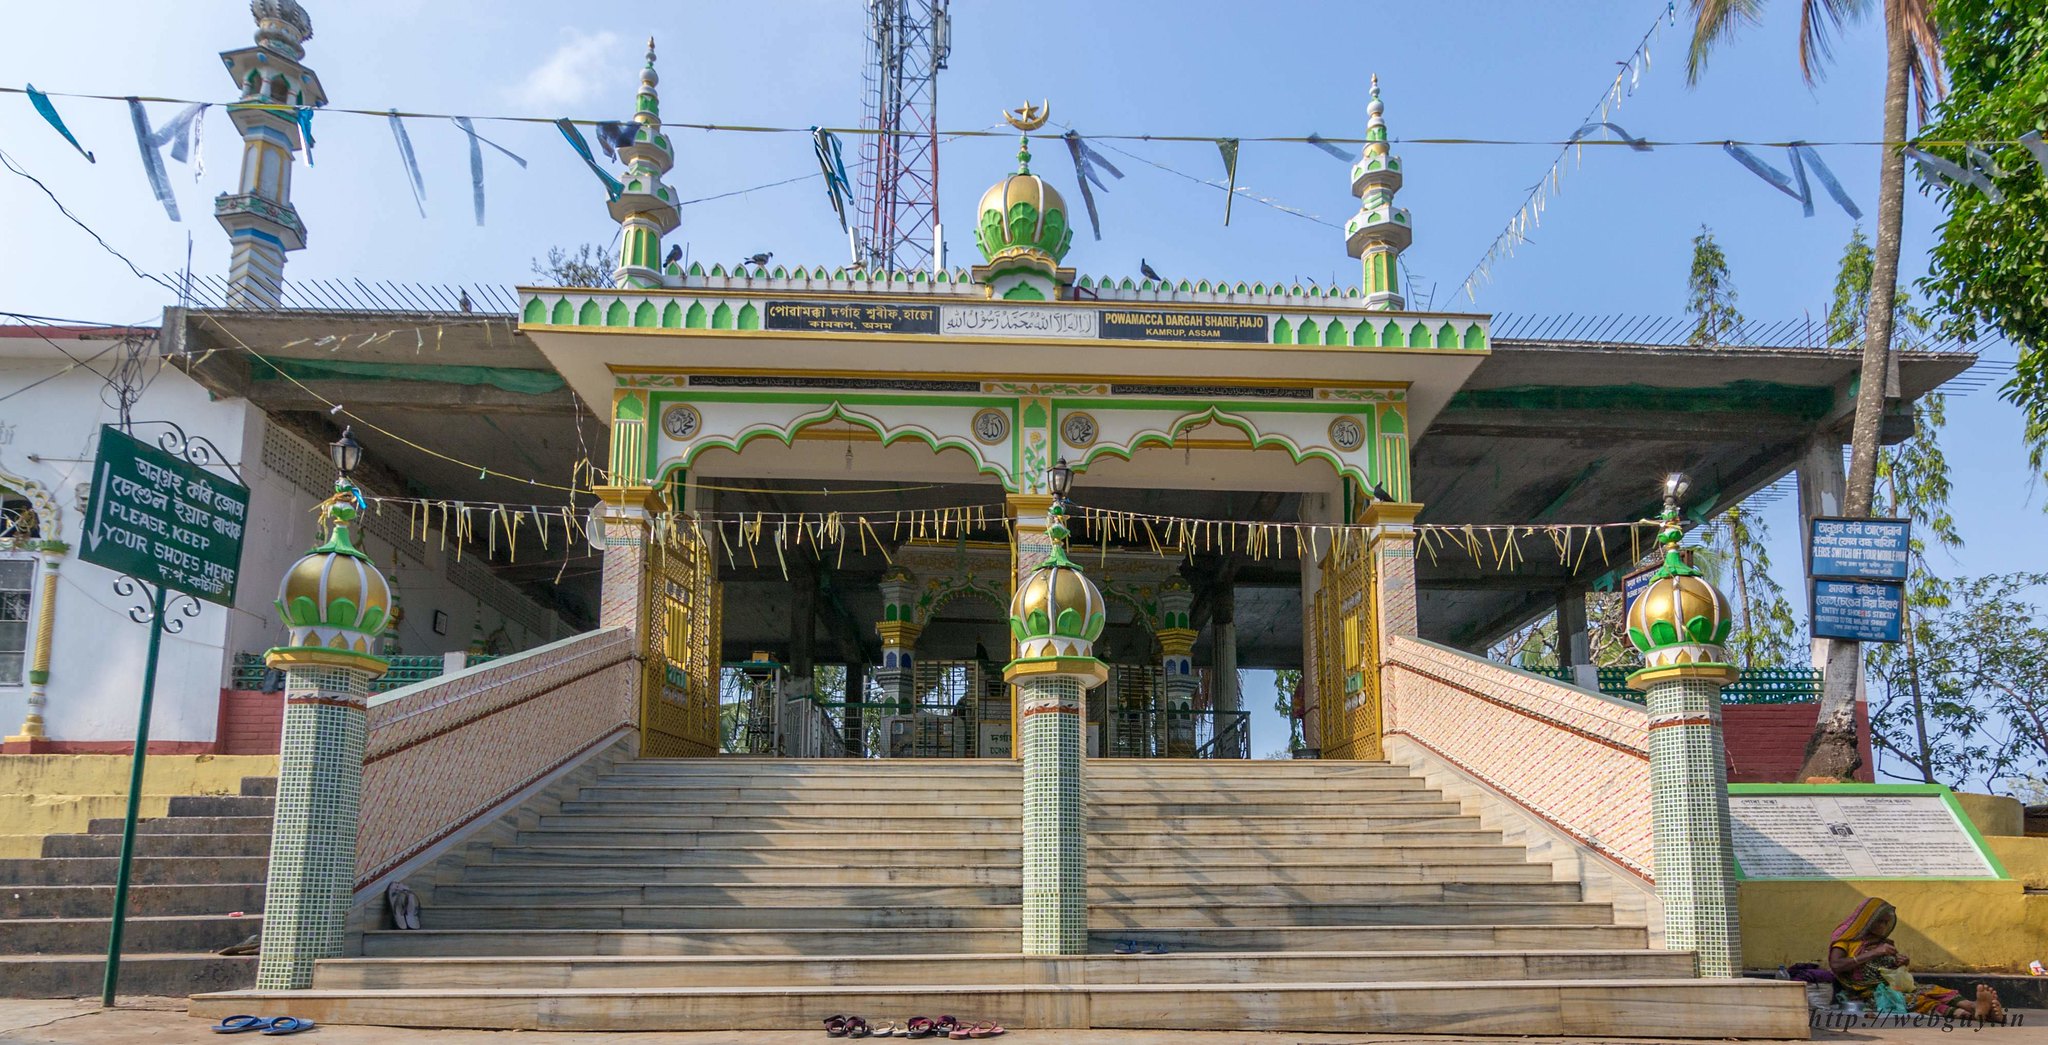 The Mosque, Poa Mecca - Hajo